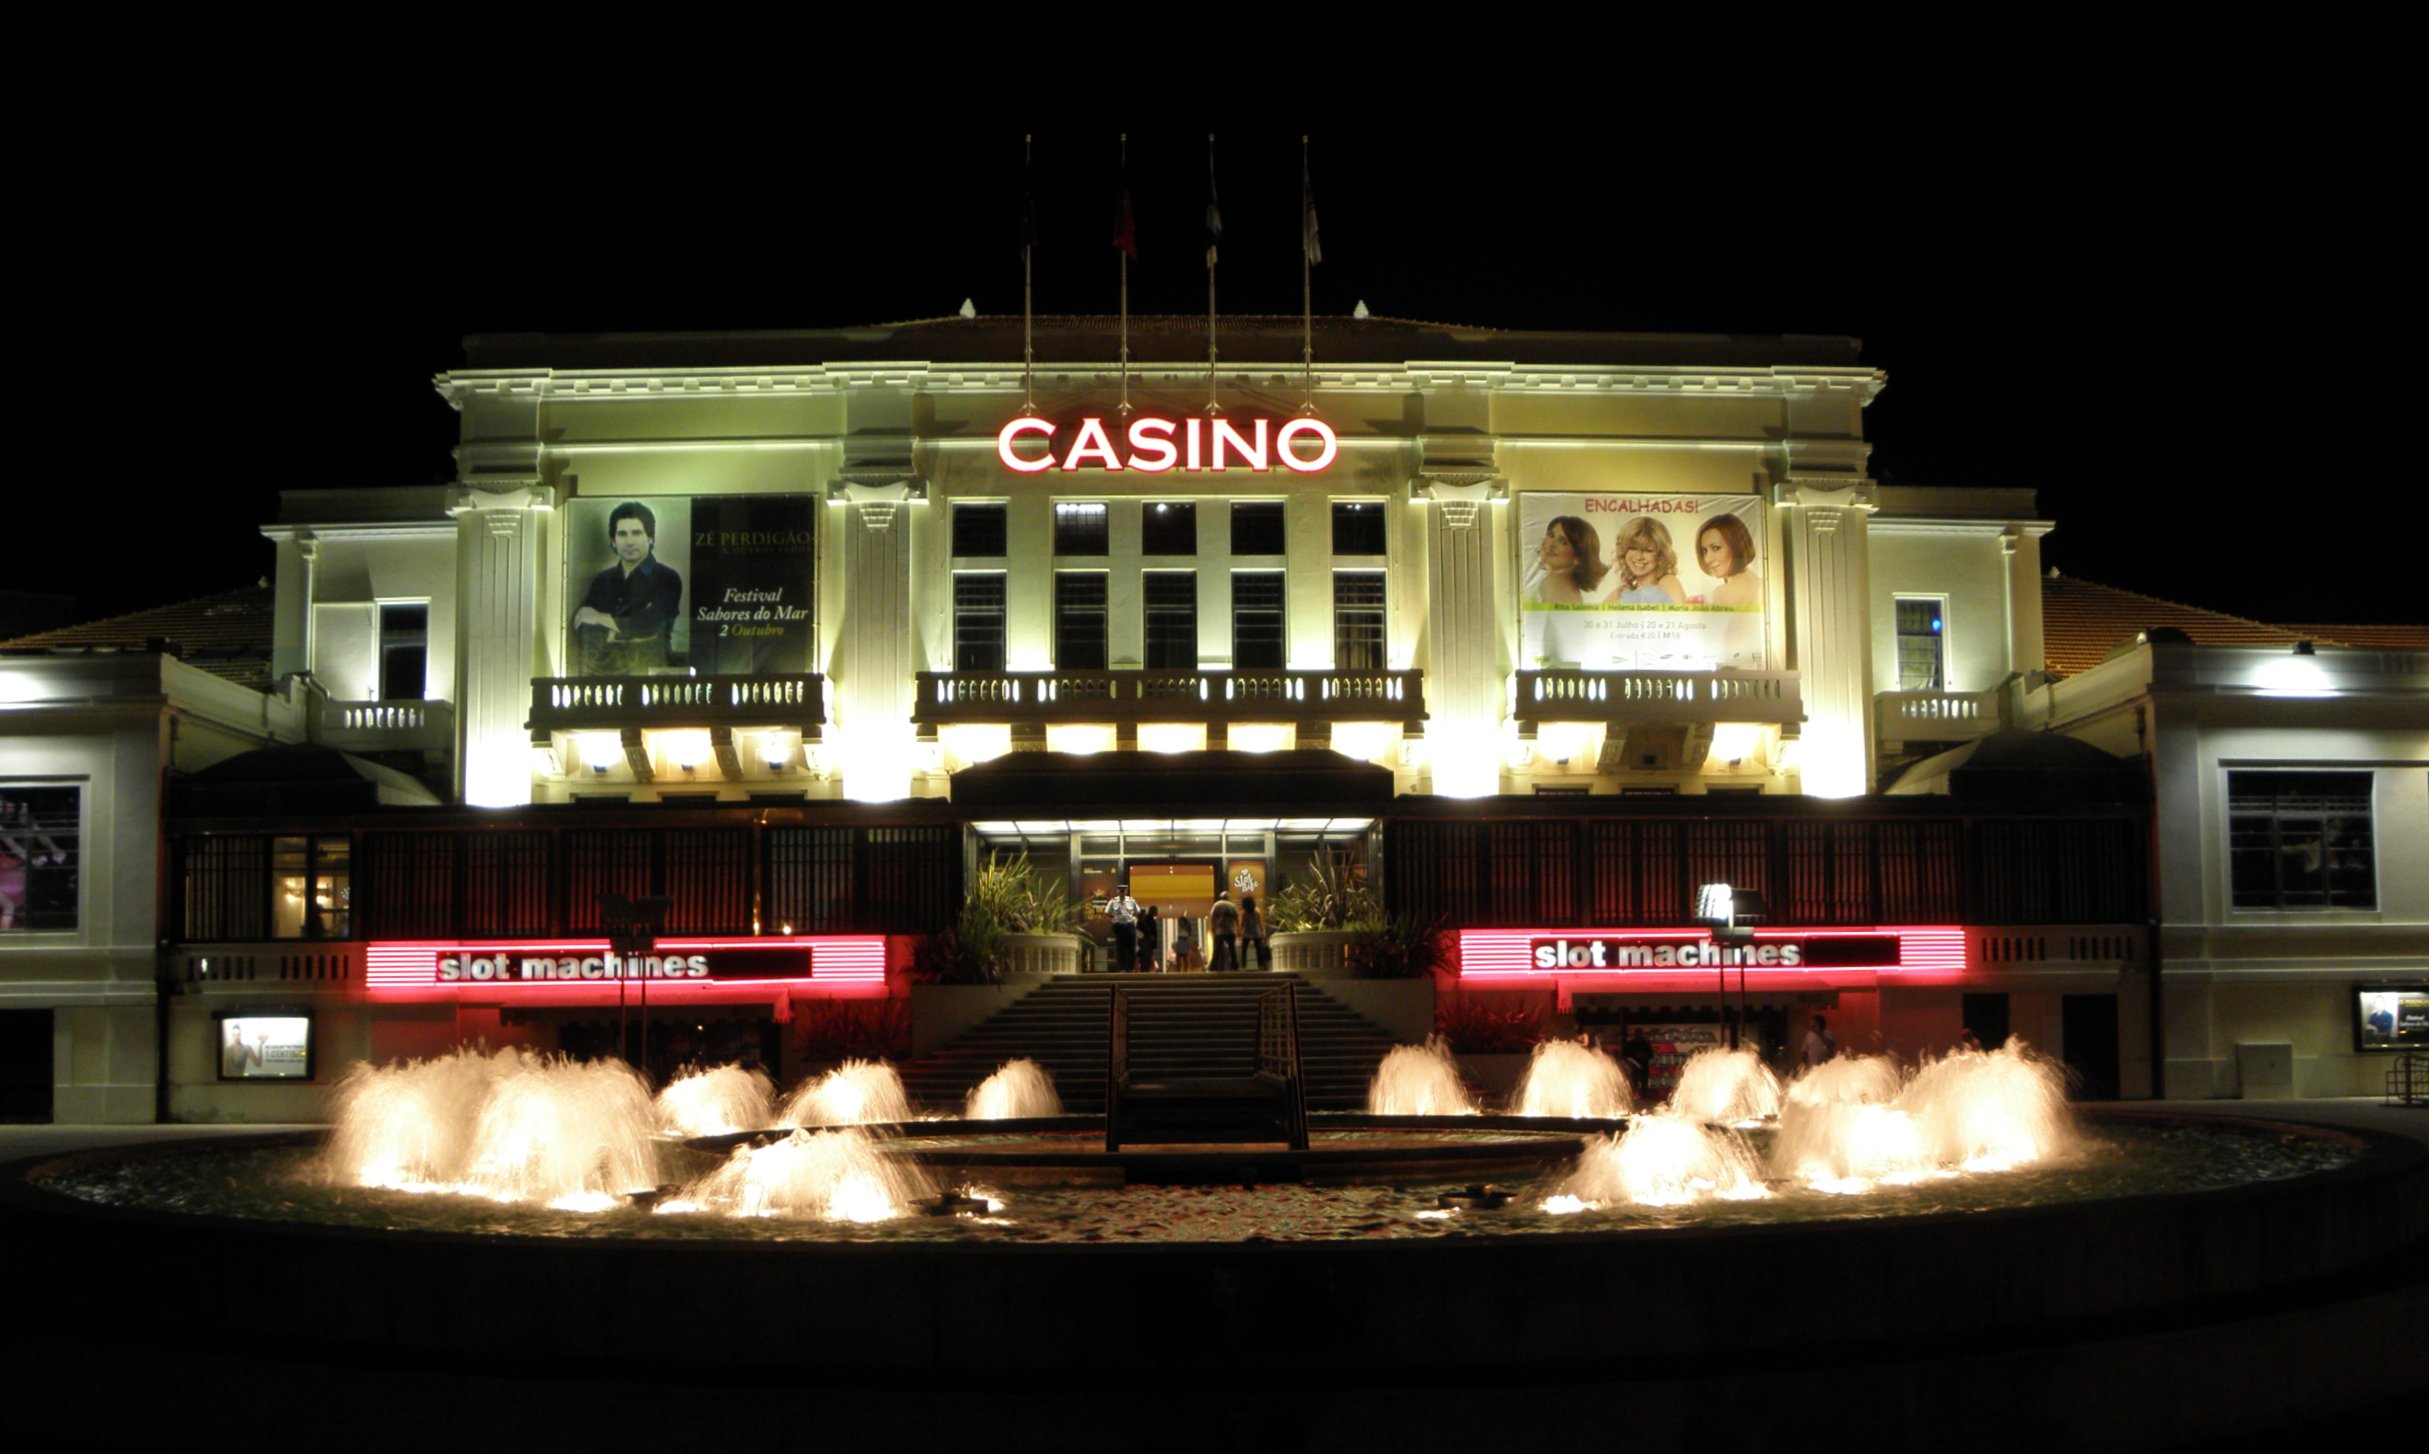 Casino da Povoa